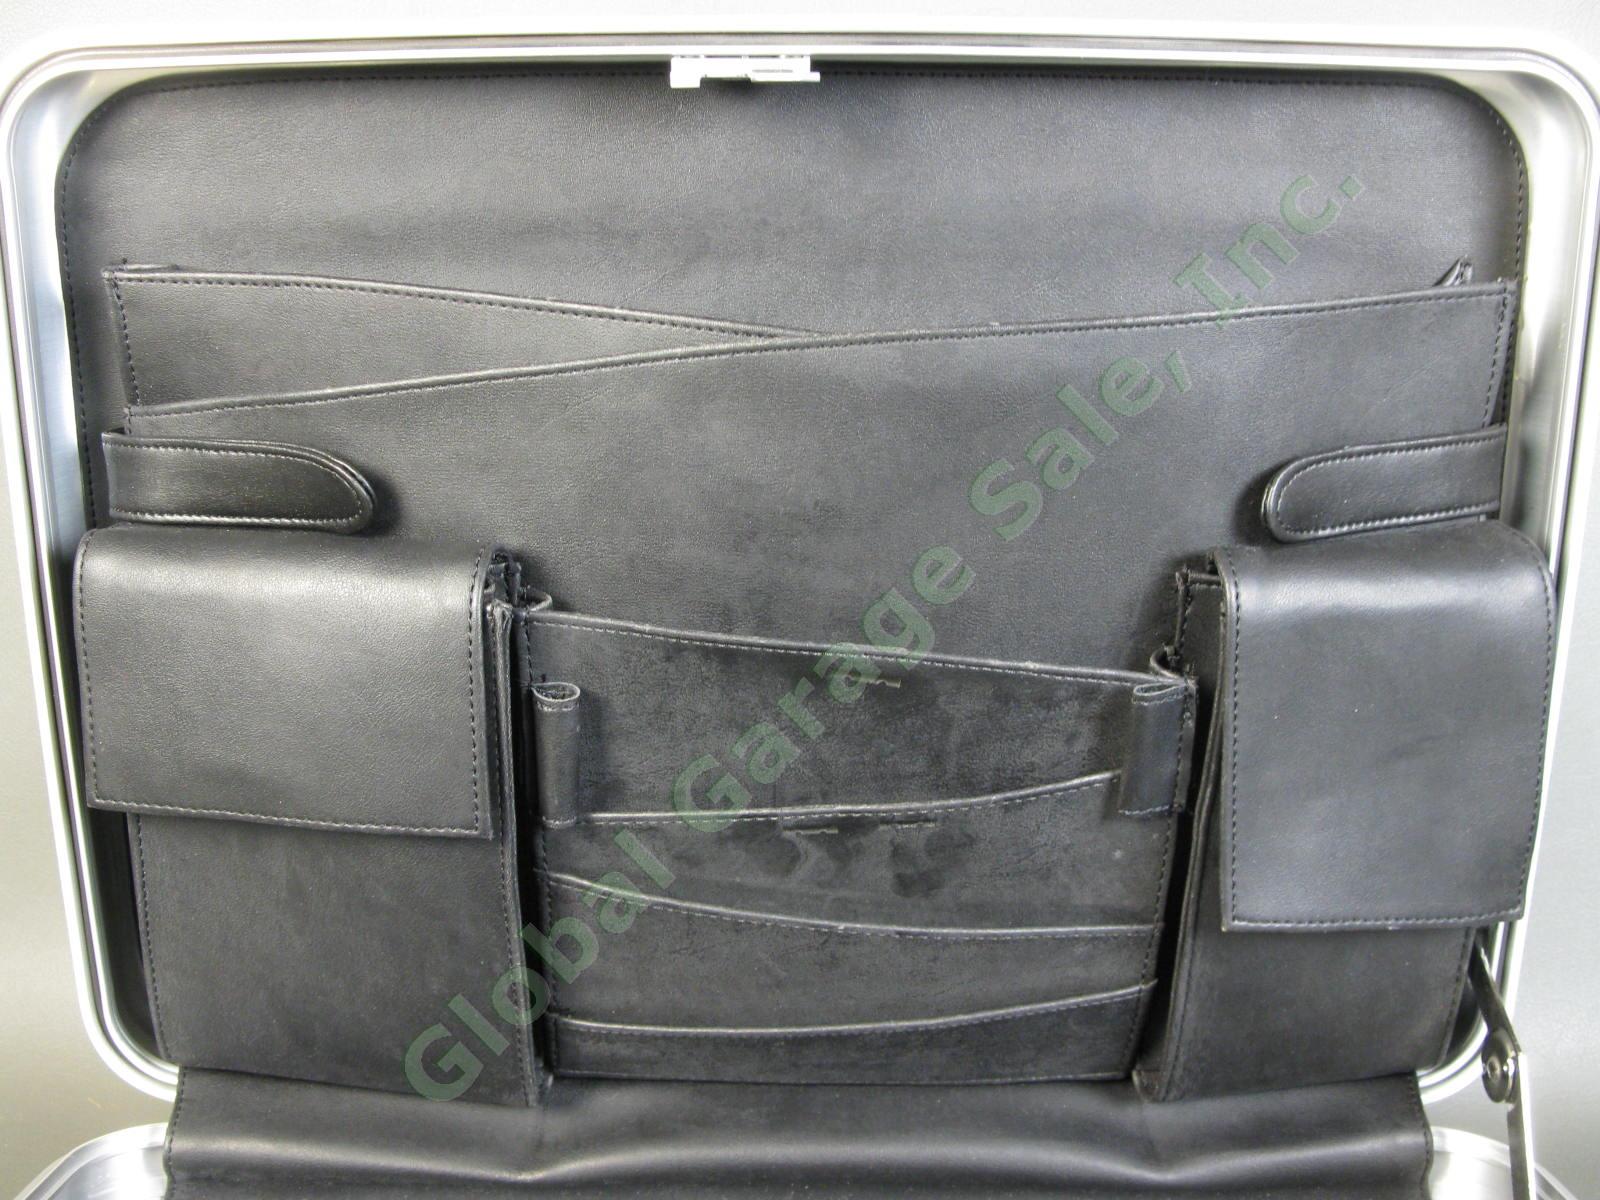 Halliburton ZERO Aluminum Briefcase 18"x13"x3" Combo Lock Excellent Condition NR 8